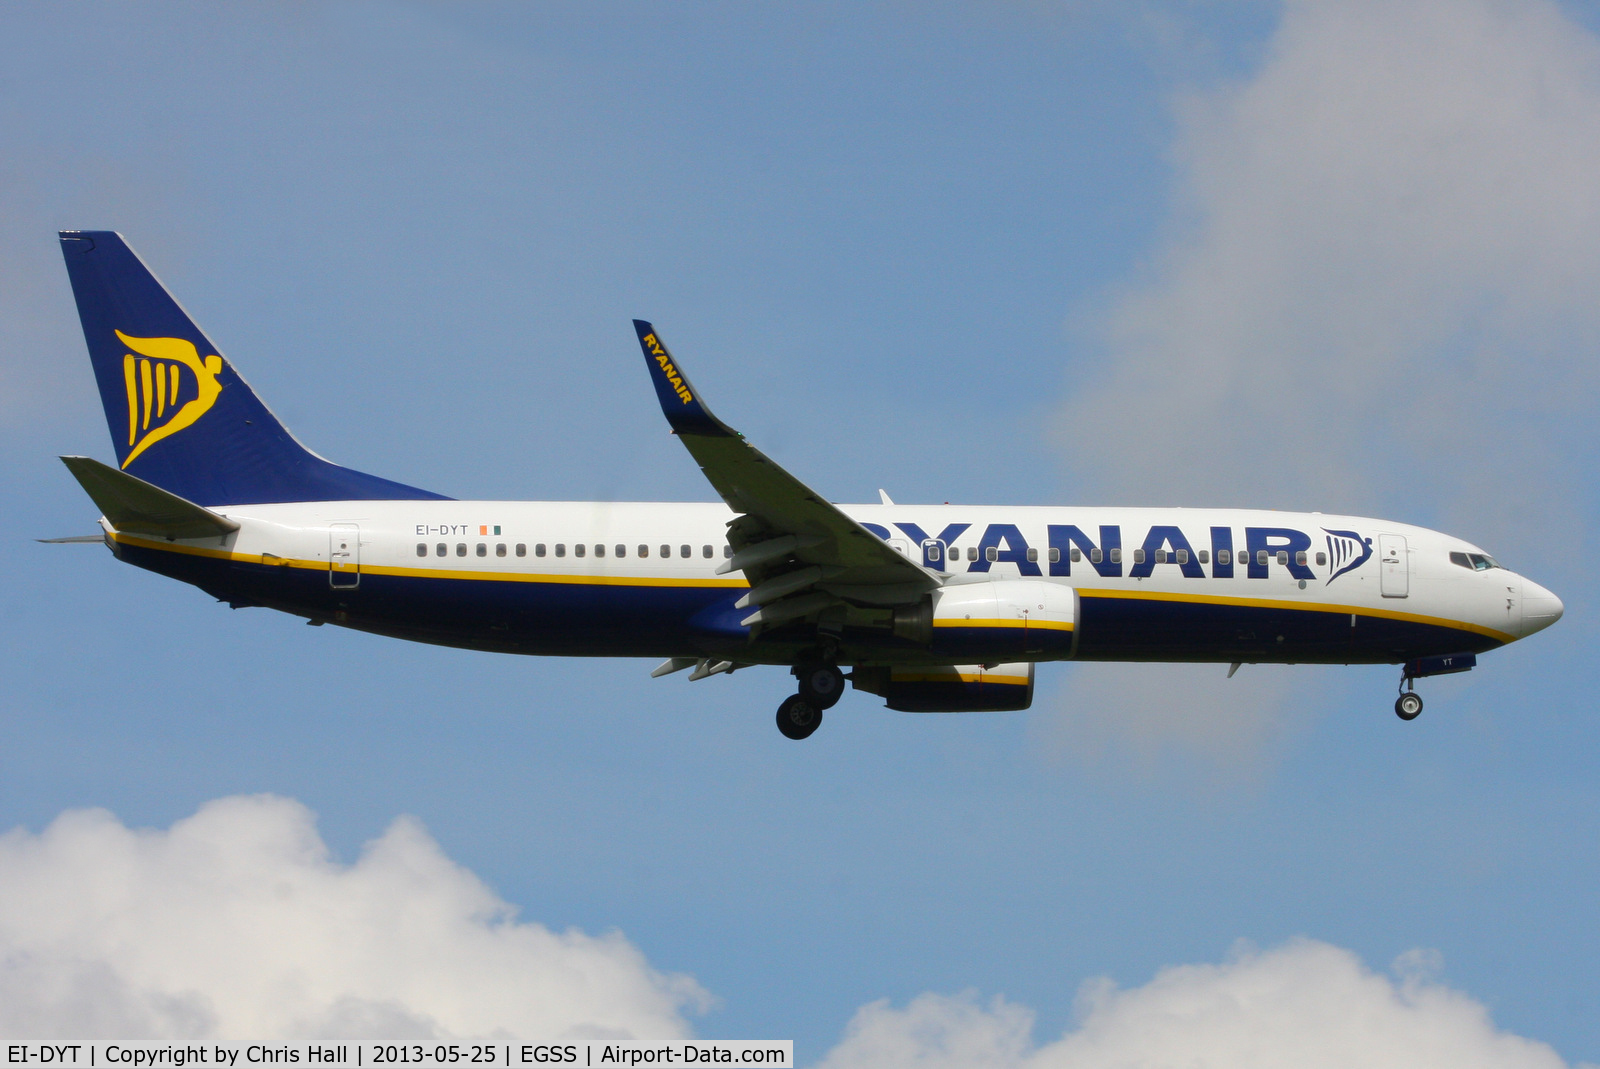 EI-DYT, 2008 Boeing 737-8AS C/N 33634, Ryanair